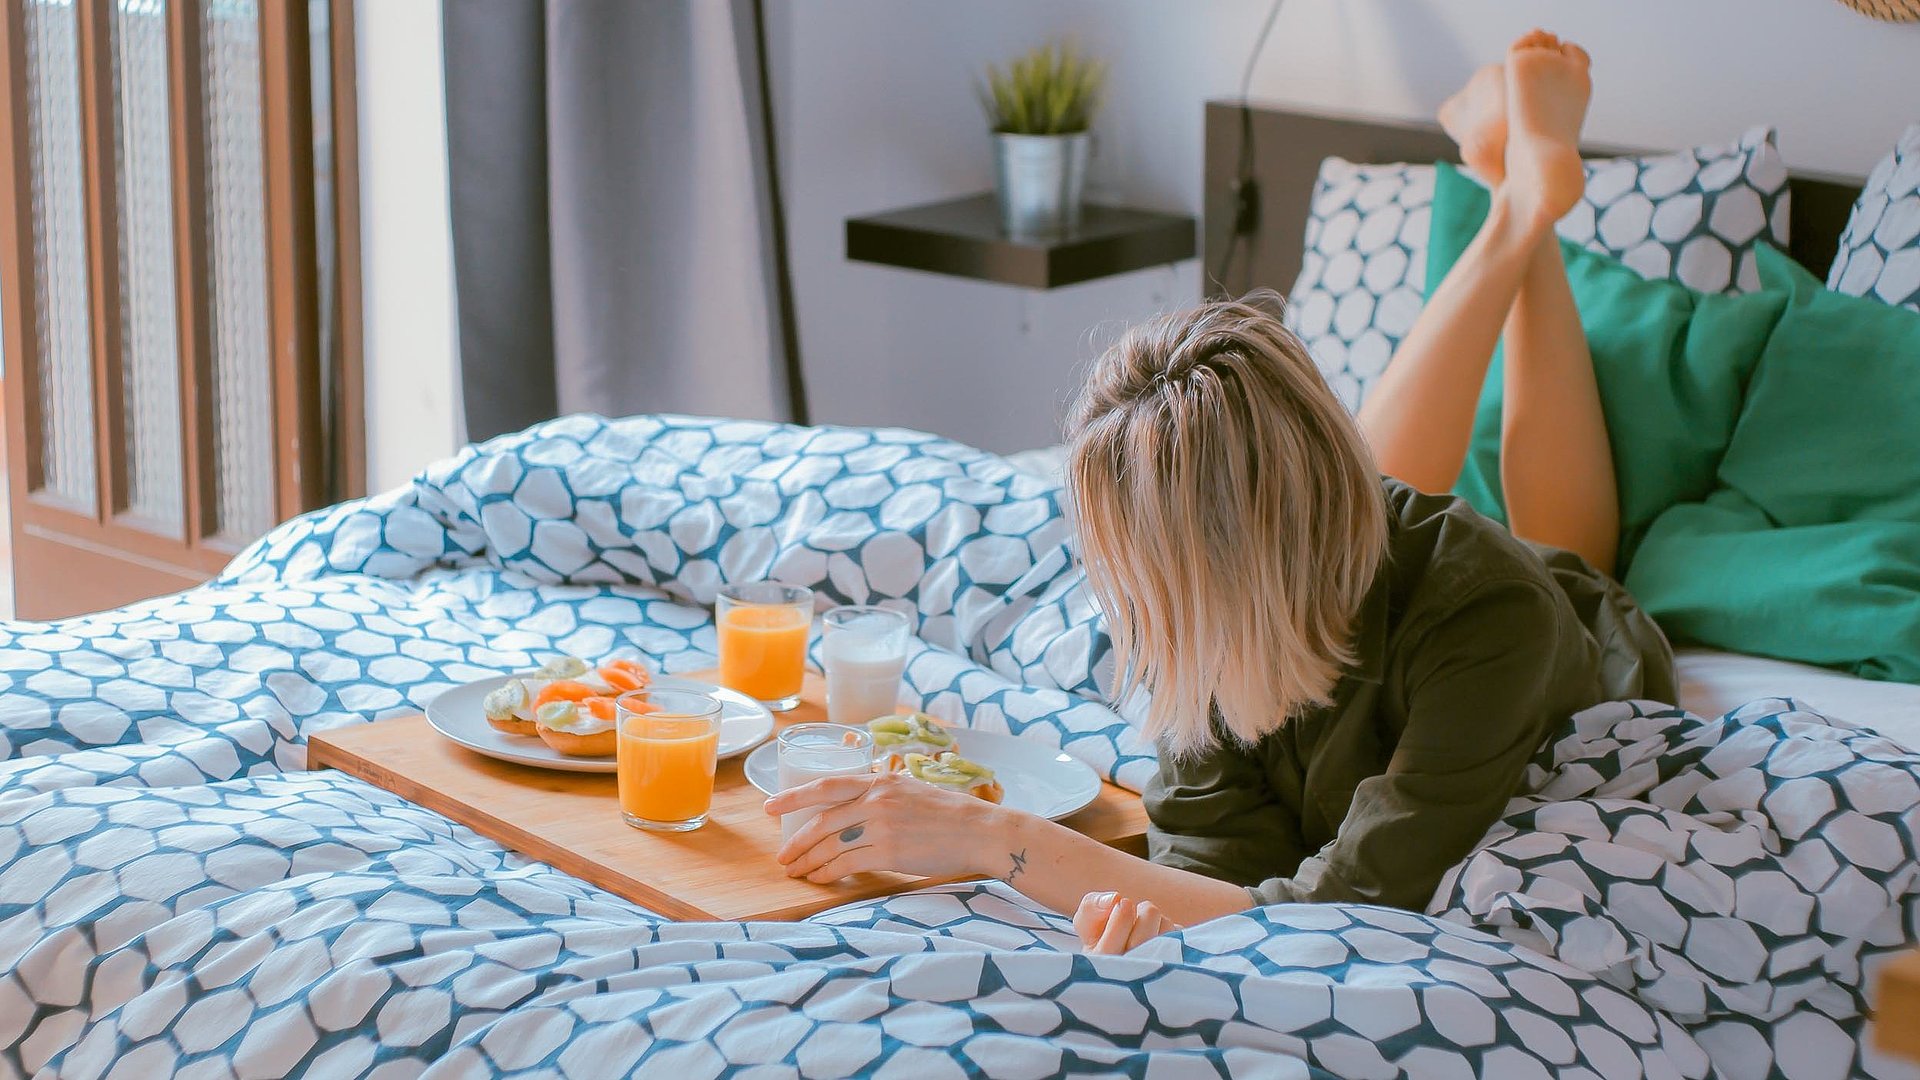 Pauschalangebote für Wochentagsunterkünfte in Mittelfranken - junge blonde Frau liegt im Bett neben einer Frühstücksplatte, gefüllt mit O-Saft, Milch und belegten Brötchen 